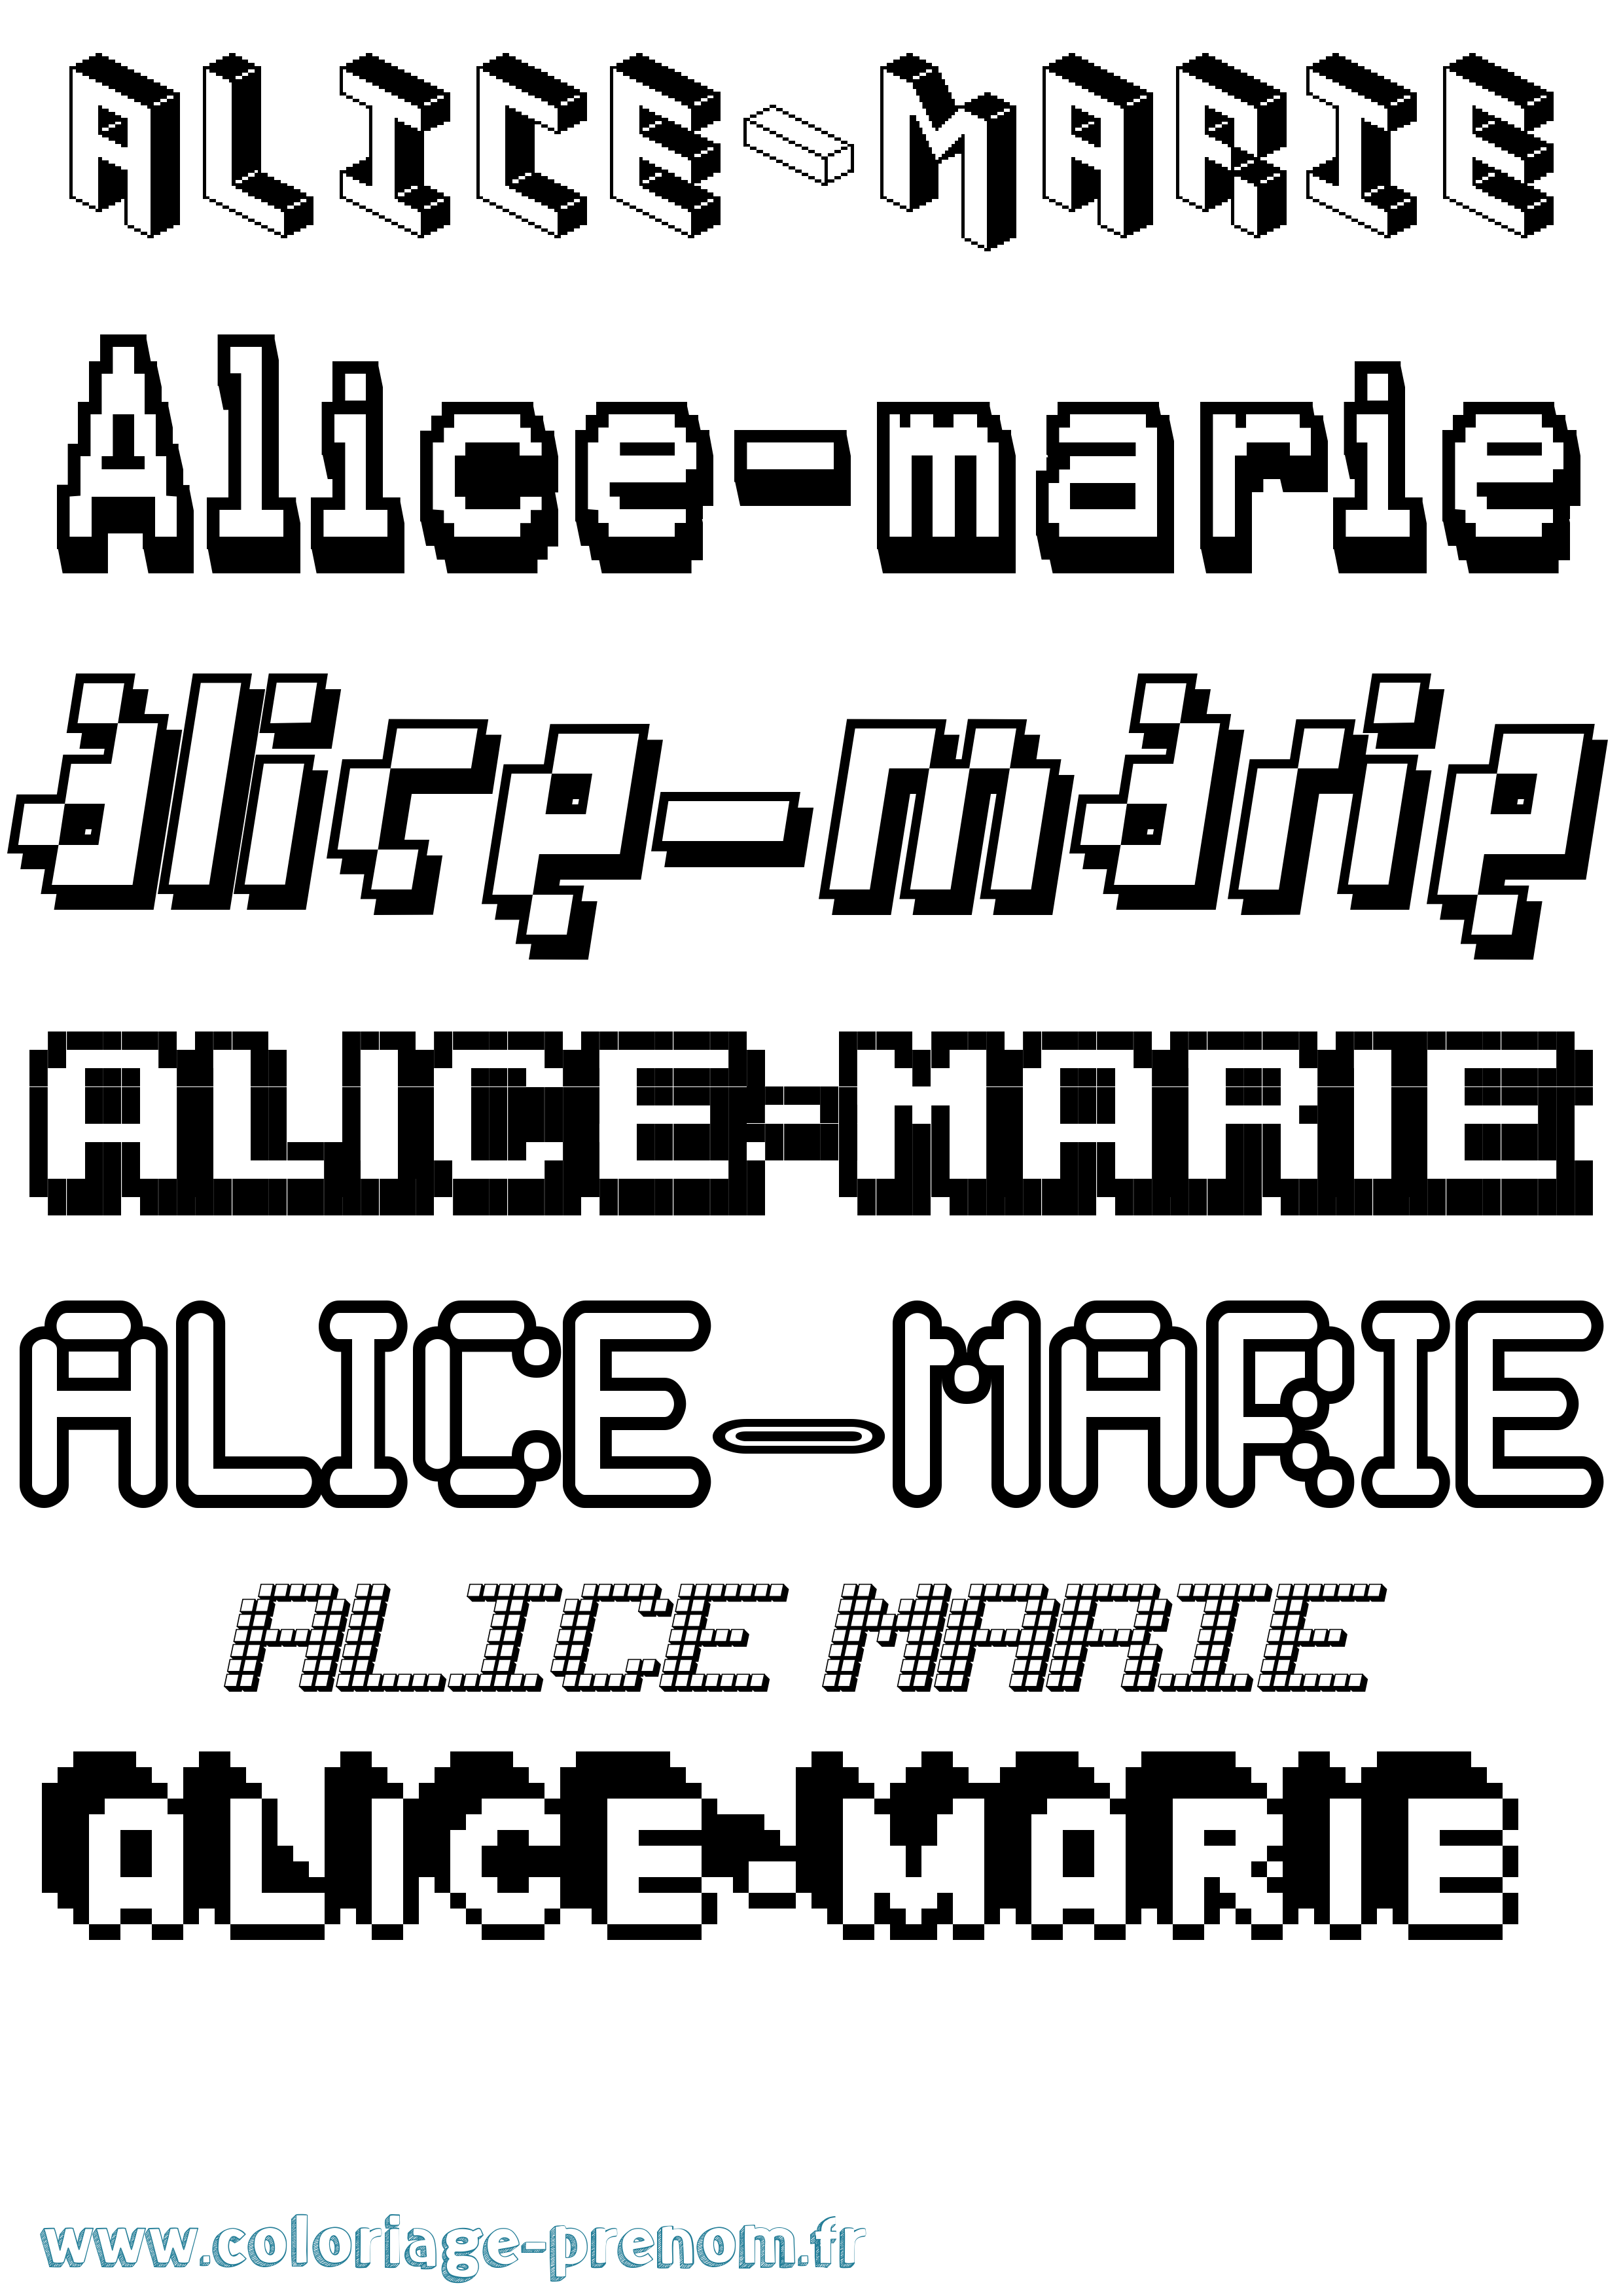 Coloriage prénom Alice-Marie Pixel